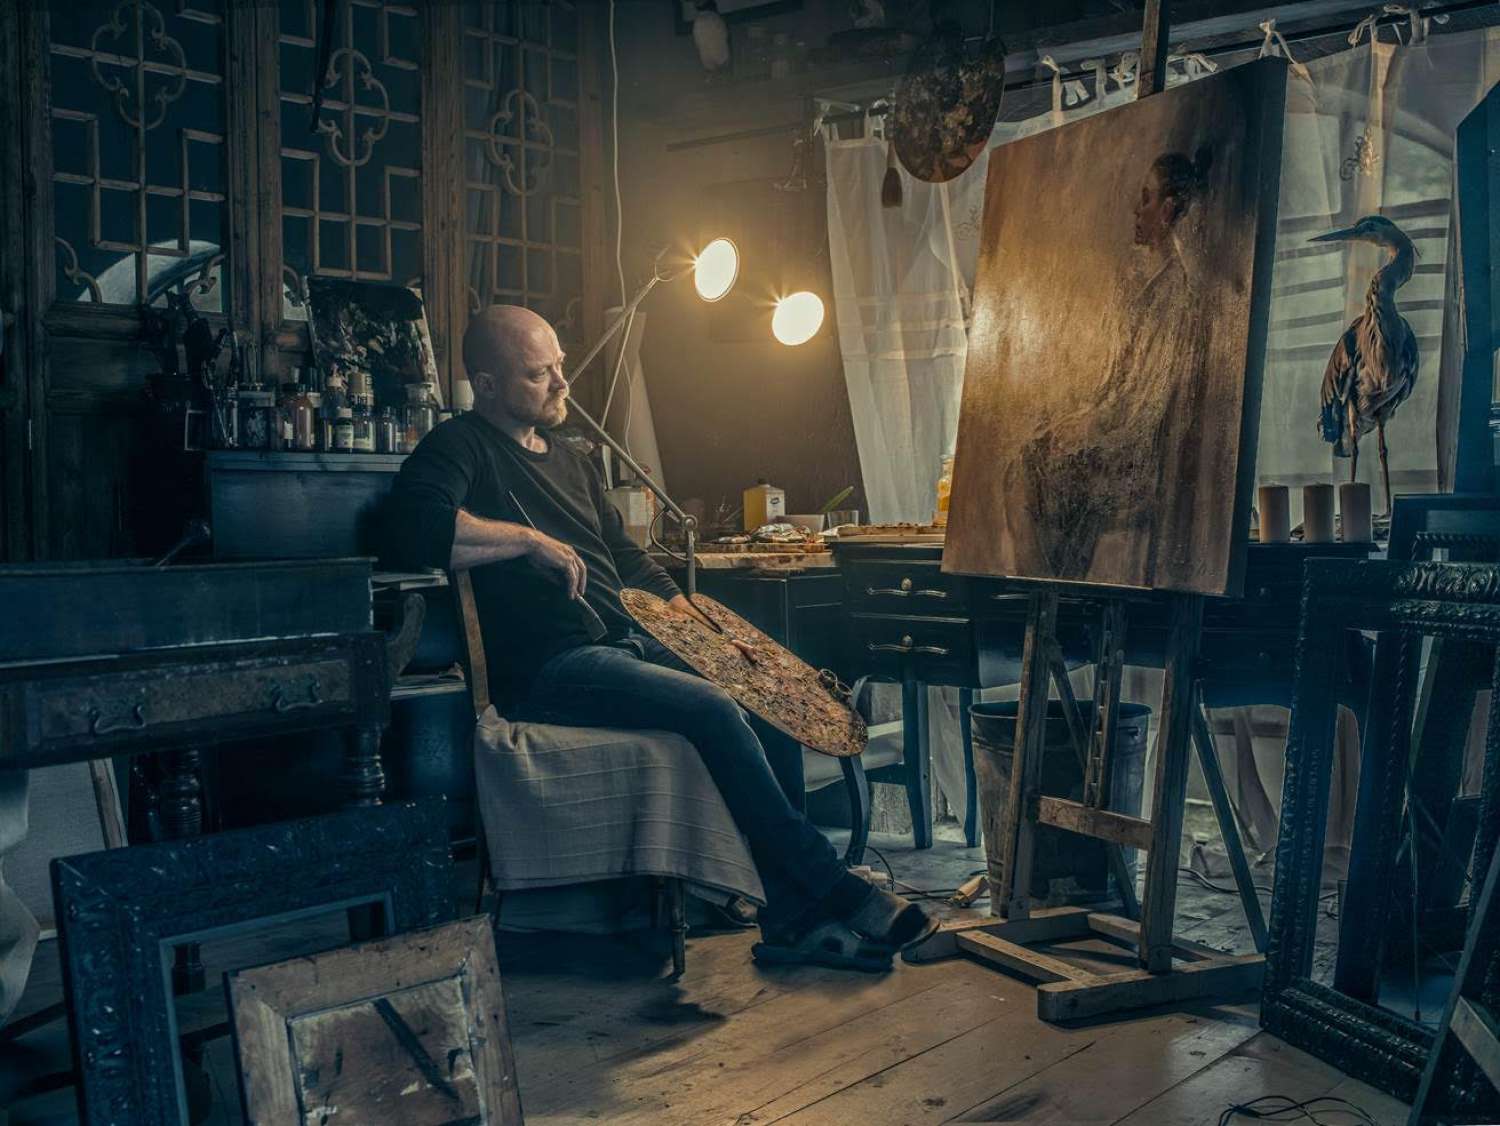 Jonny Krucow Heng: In his studio, a disused power station. - Jonny Krucow Heng